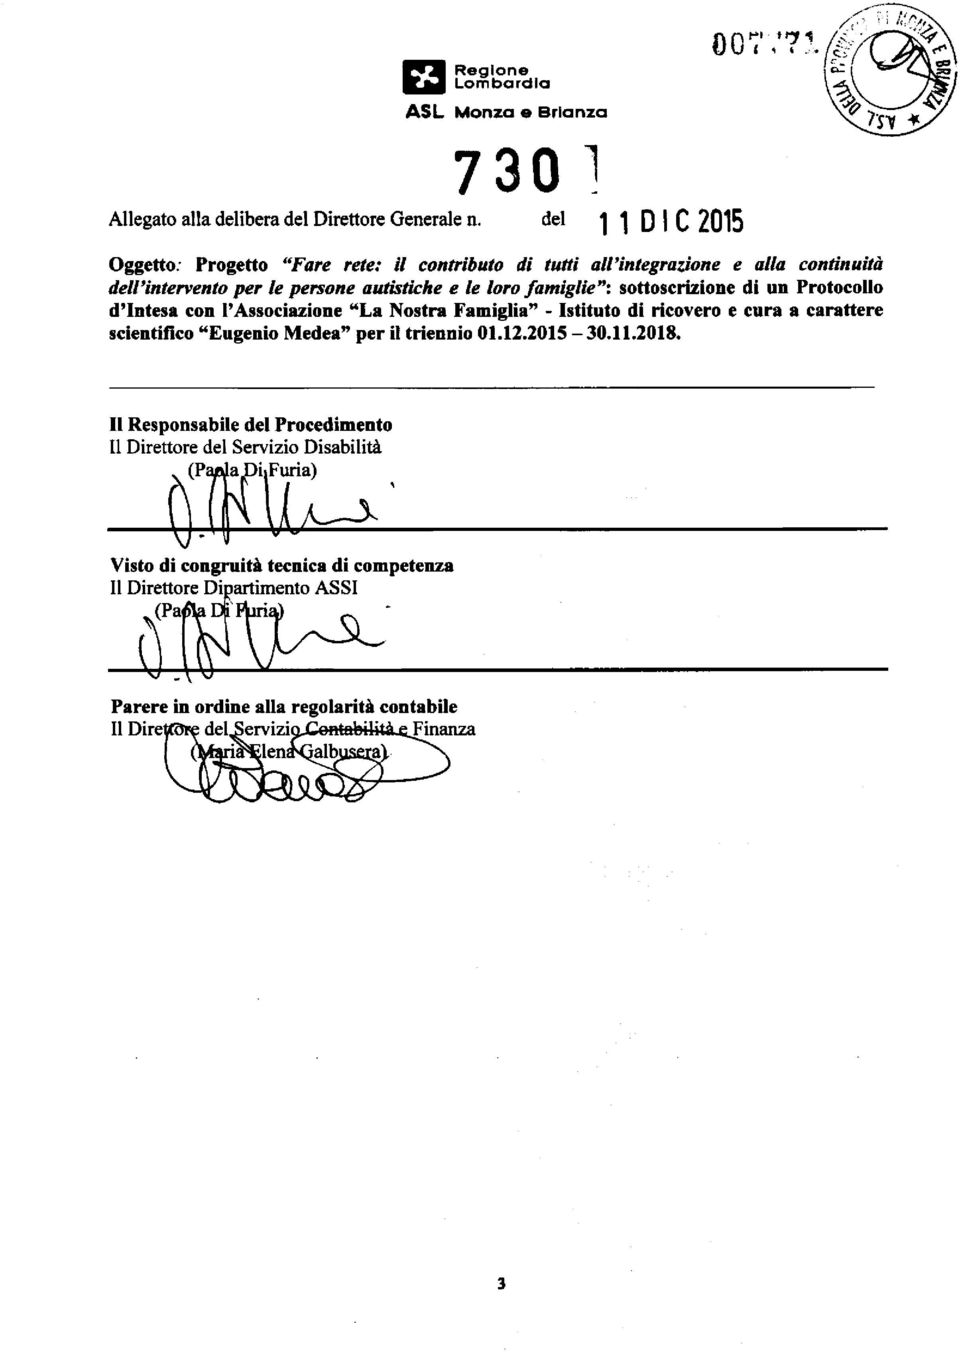 sottoscrizione di un Protocollo d'intesa con l'associazione "La Nostra Famiglia" - Istituto di ricovero e cura a carattere scientifico "Eugenio Medea" per il triennio 01.12.